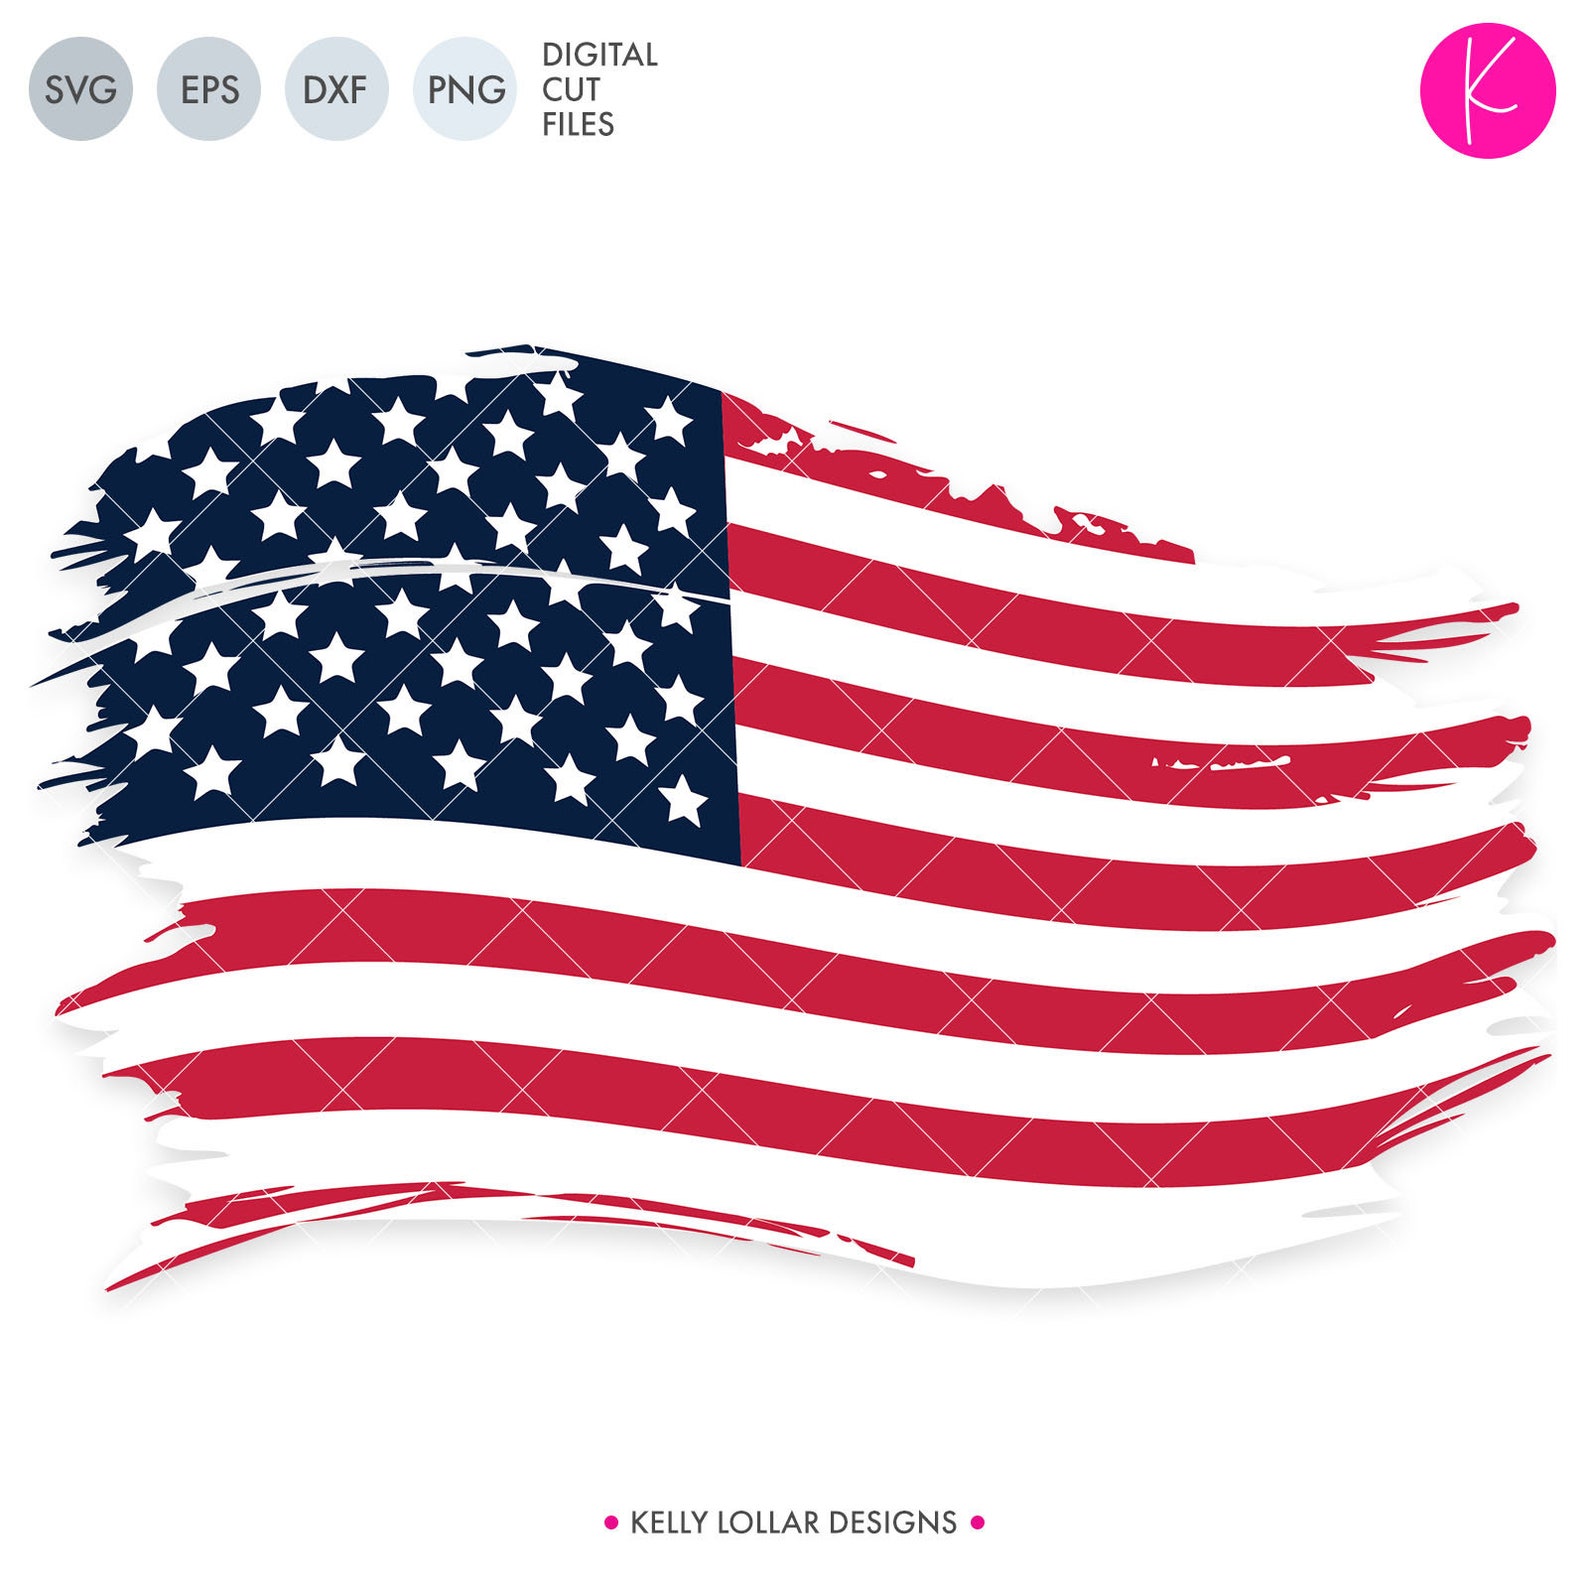 Distressed американский флаг SVG Cut файл для Grunge 4 июля проектов.